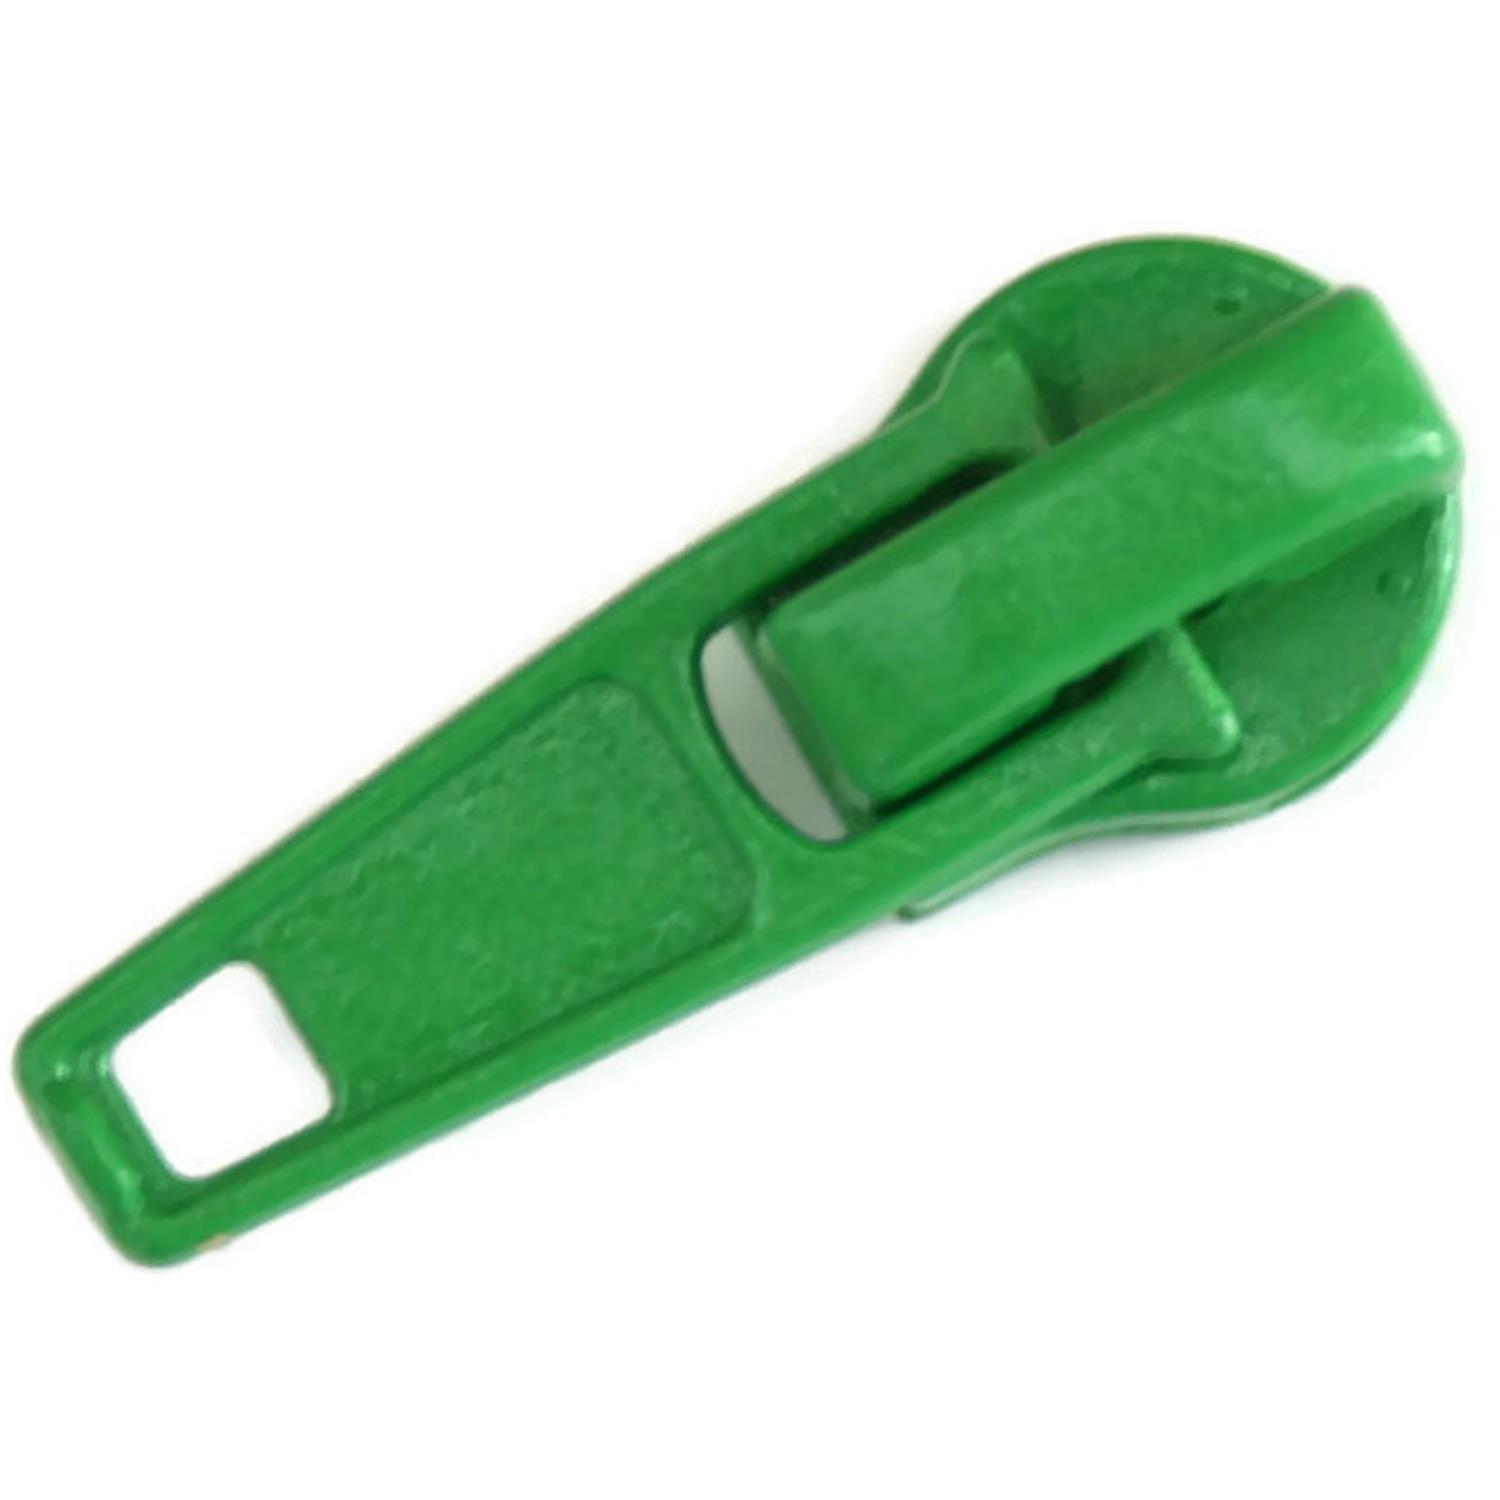 Autolock Schieber für Endlosreißverschluss 5mm, 42 Farben 82 - grassgrün